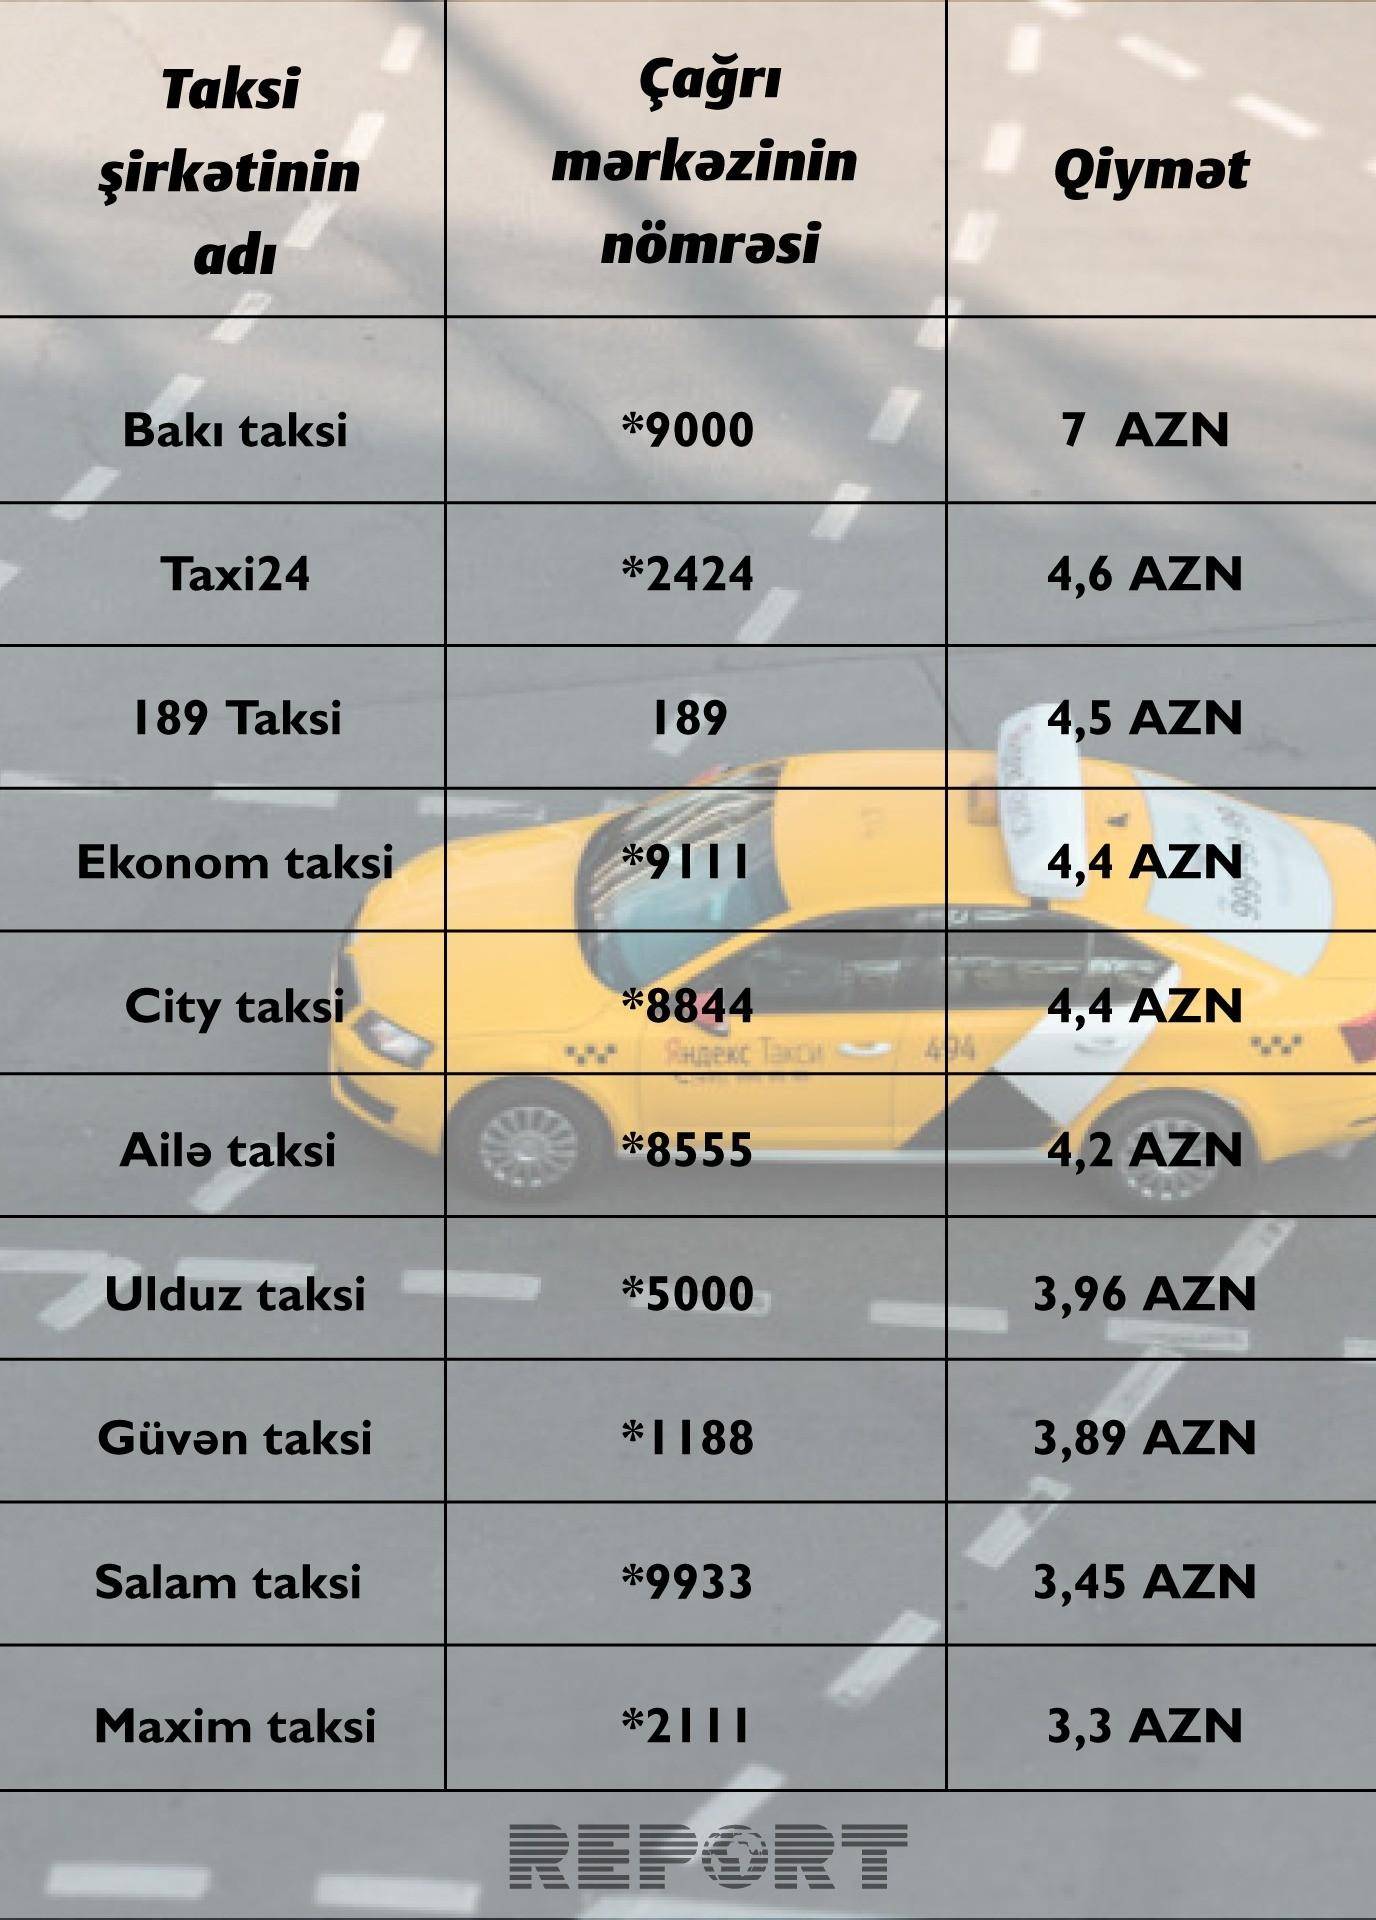 Таблицы со списками автомобилей, которые могут работать с тарифами «яндекс такси» в москве: старт, эконом, детский, комфорт, бизнес, премиум и минивэн